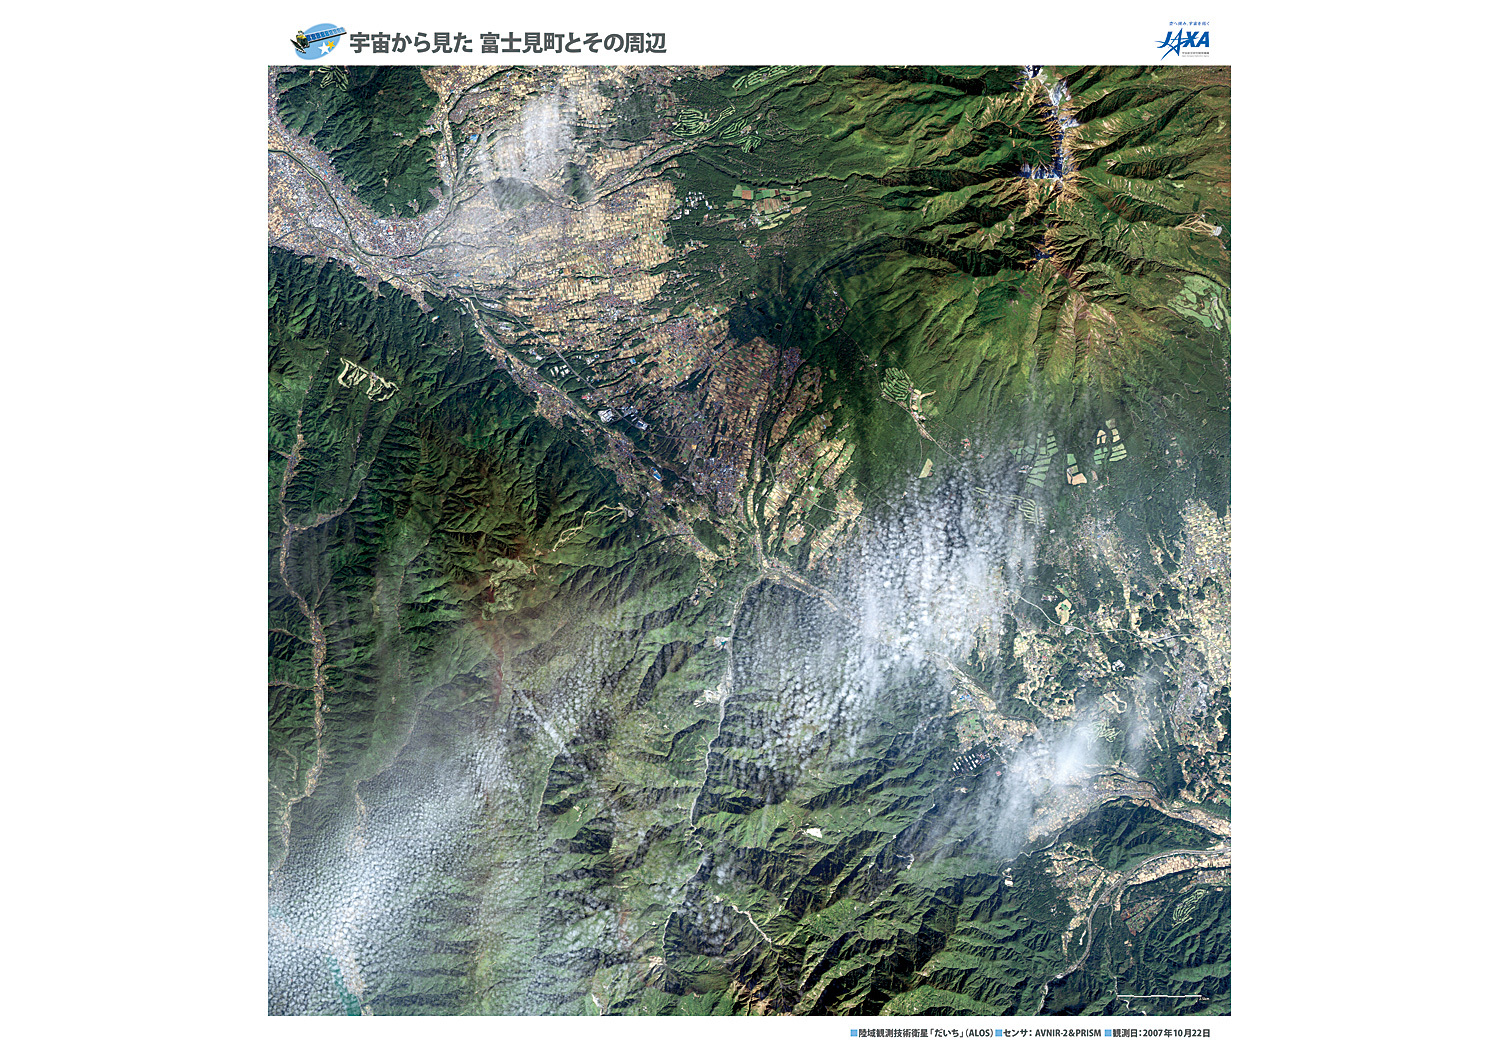 だいちから見た日本の都市 富士見町とその周辺:衛星画像（ポスター仕上げ）